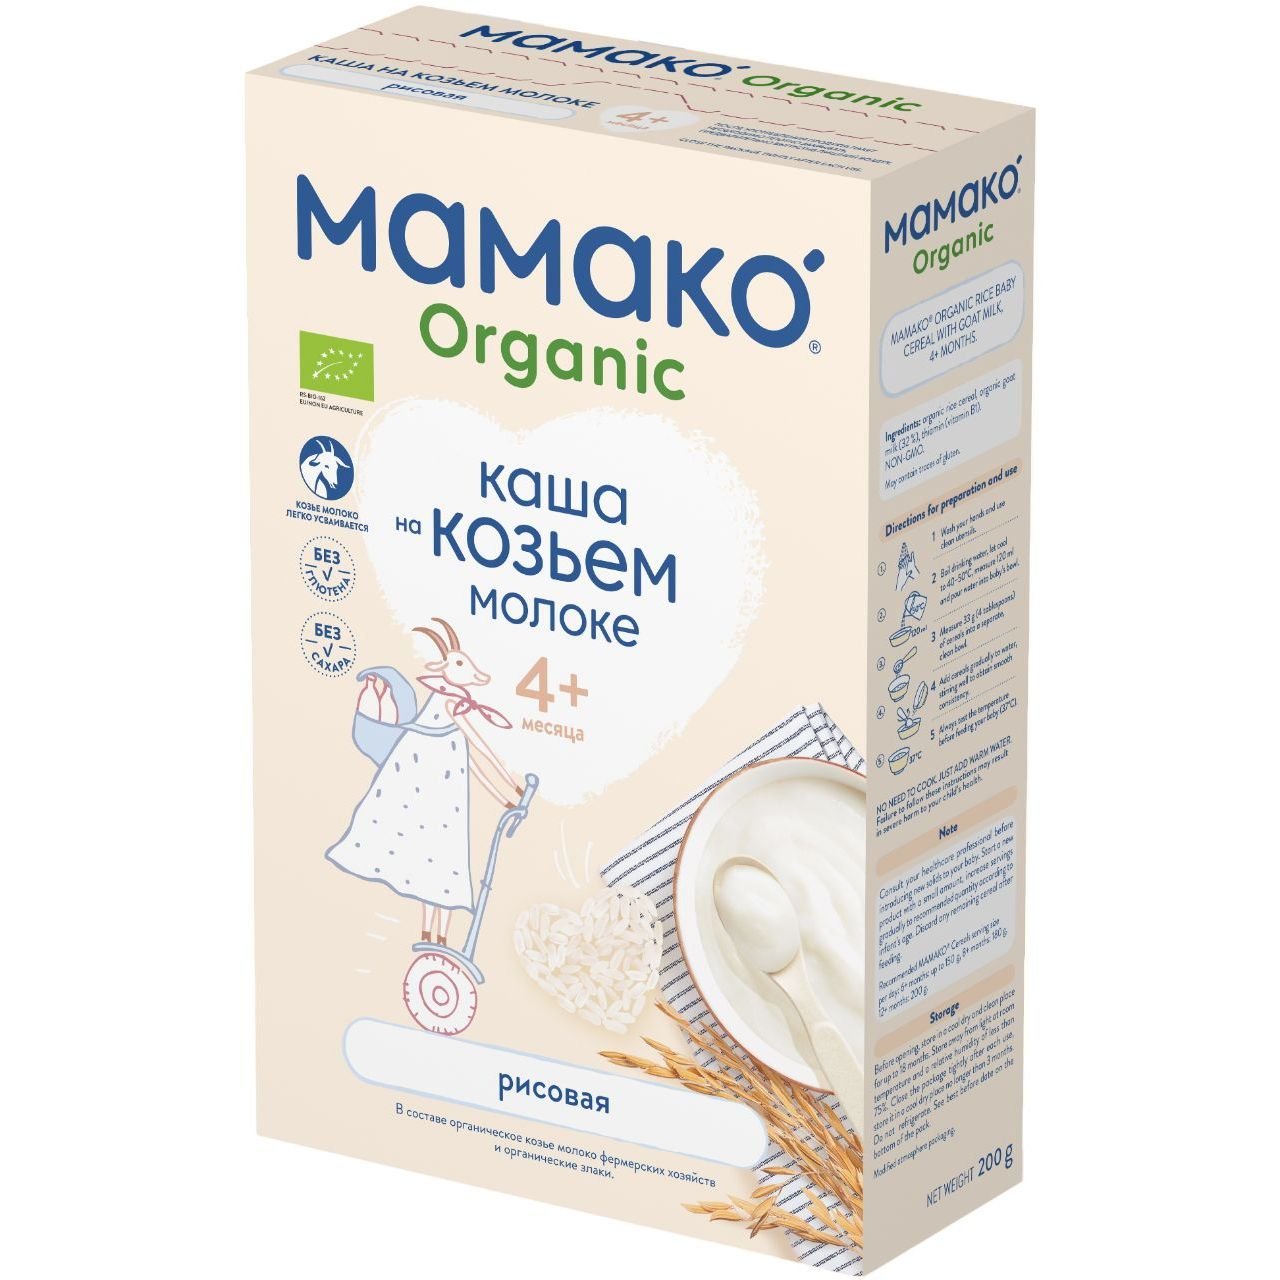 Каша на козьем молоке МАМАКО Organic Рисовая 200 г - фото 2